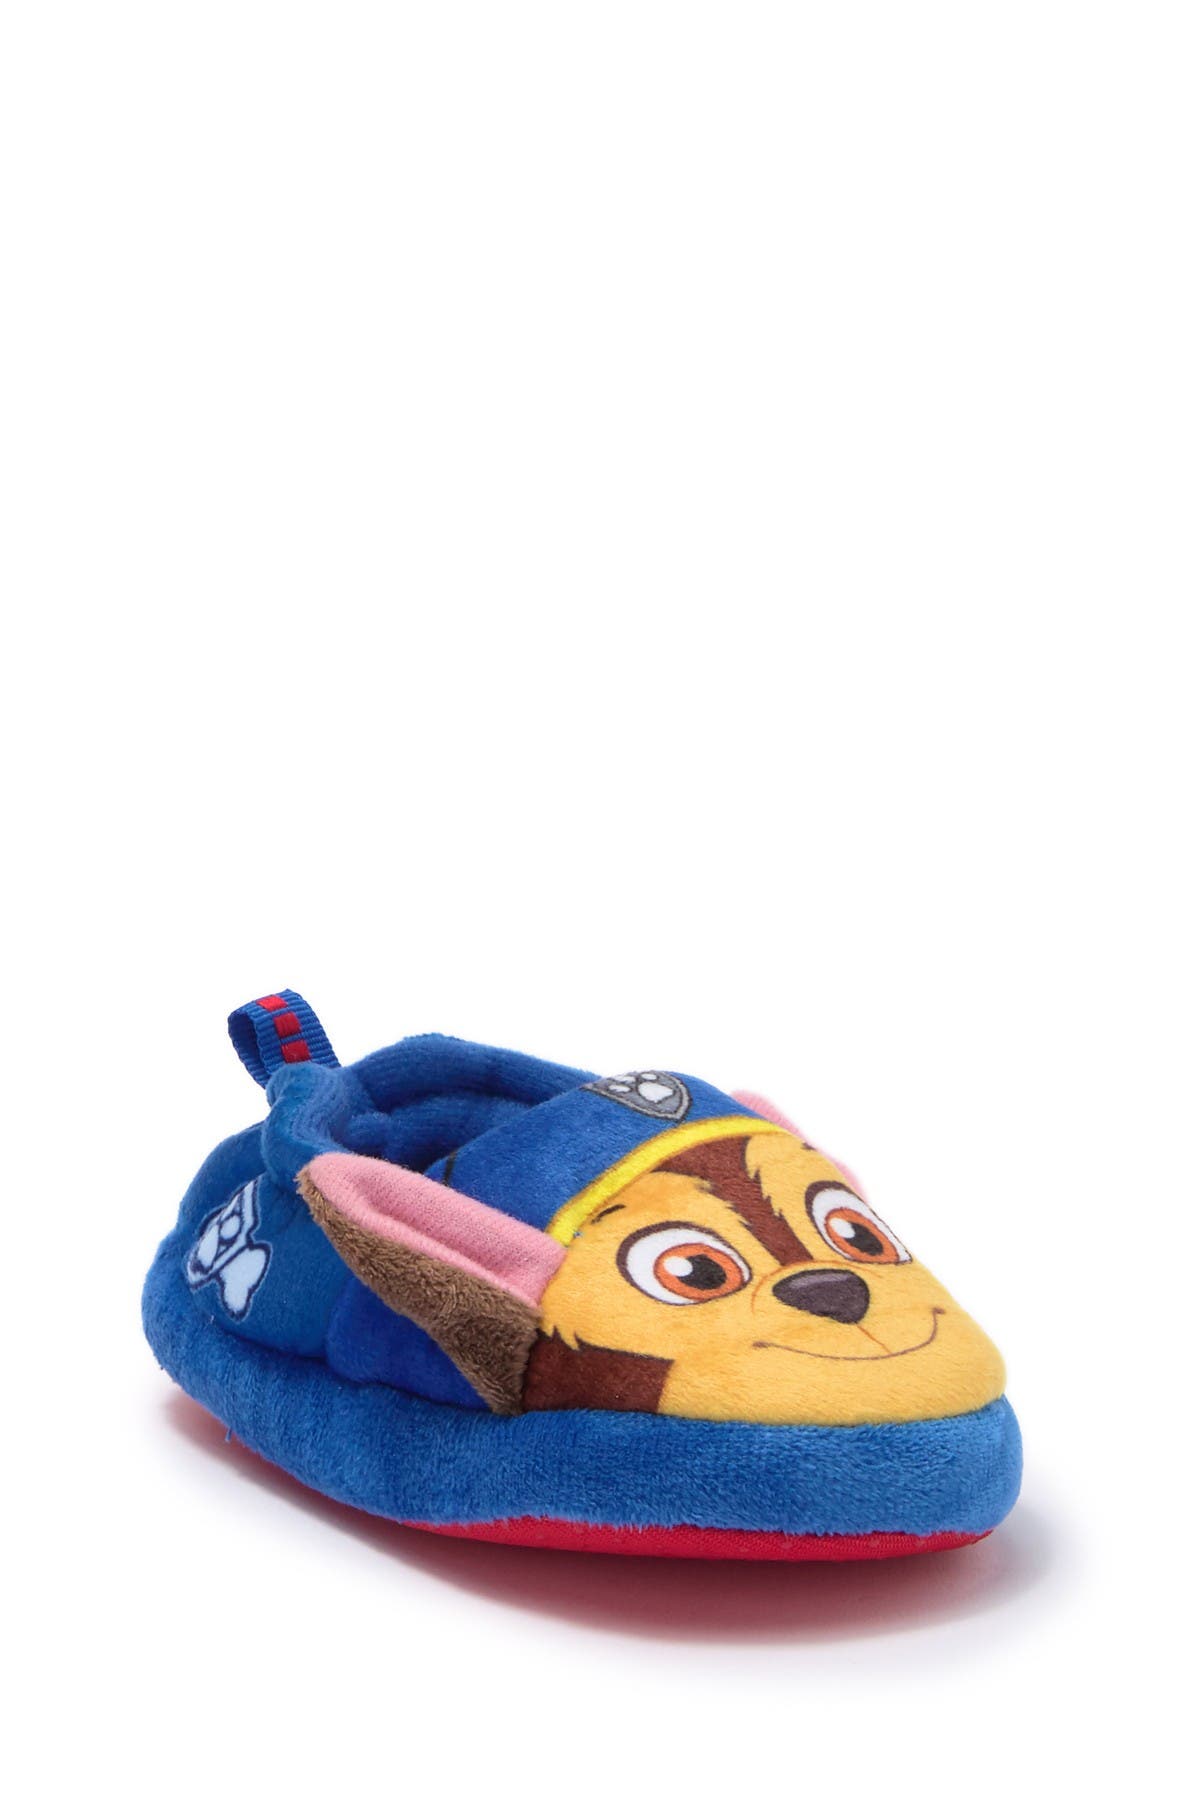 nordstrom kids slippers